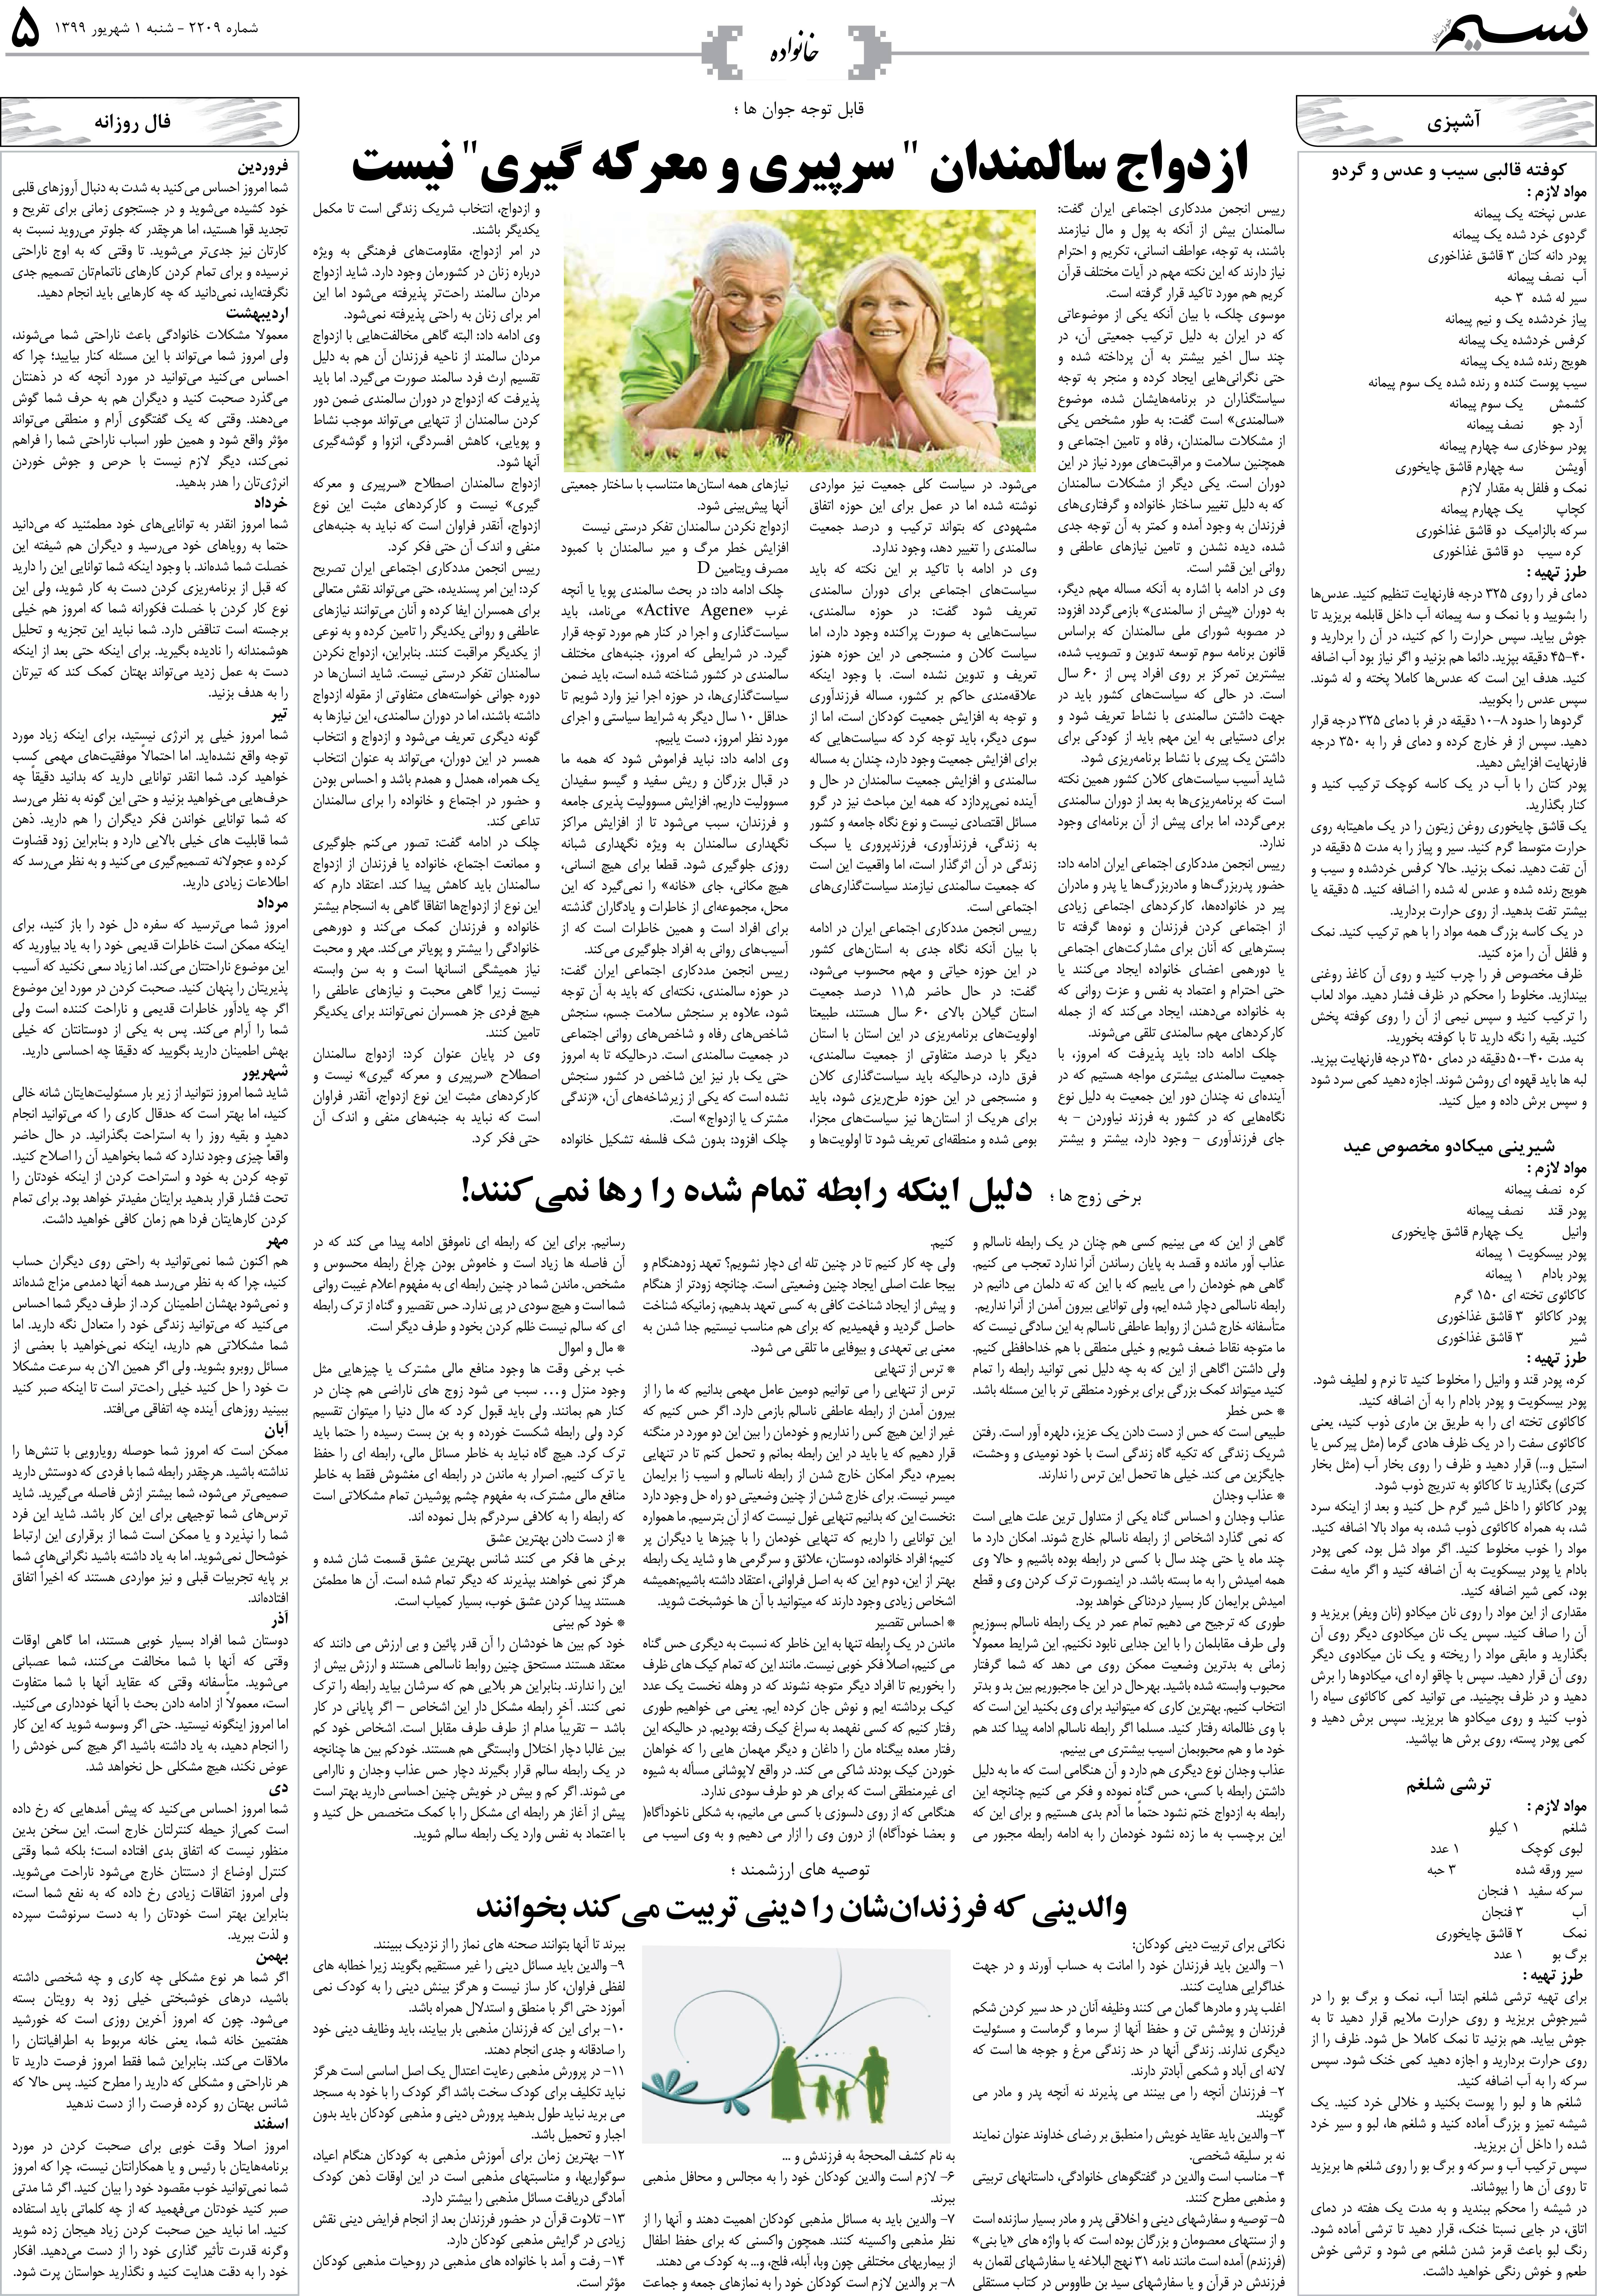 صفحه خانواده روزنامه نسیم شماره 2209